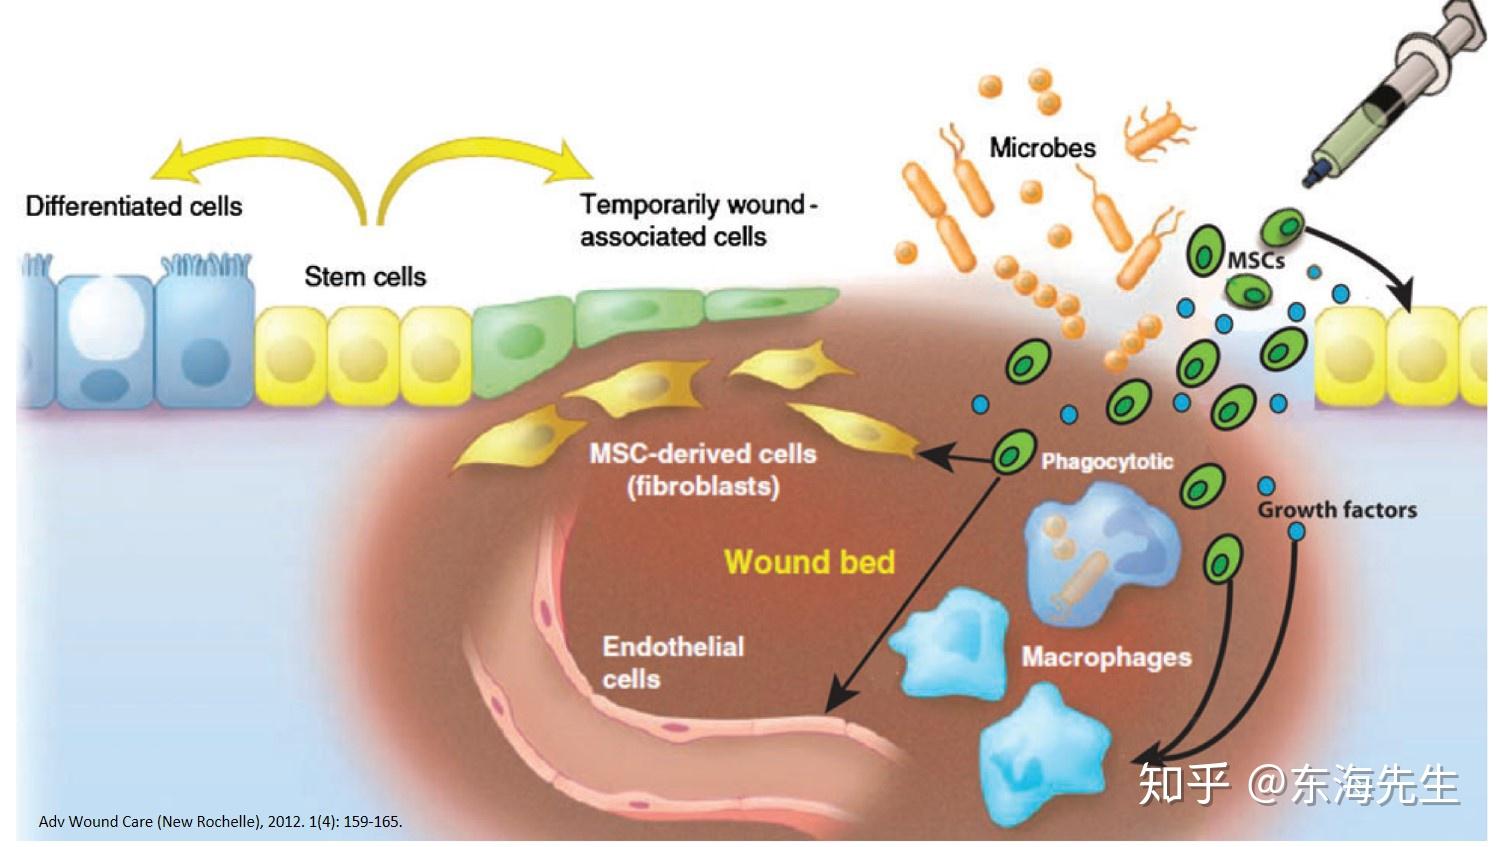 干细胞在疾病治疗中的应用 - NEJM医学前沿